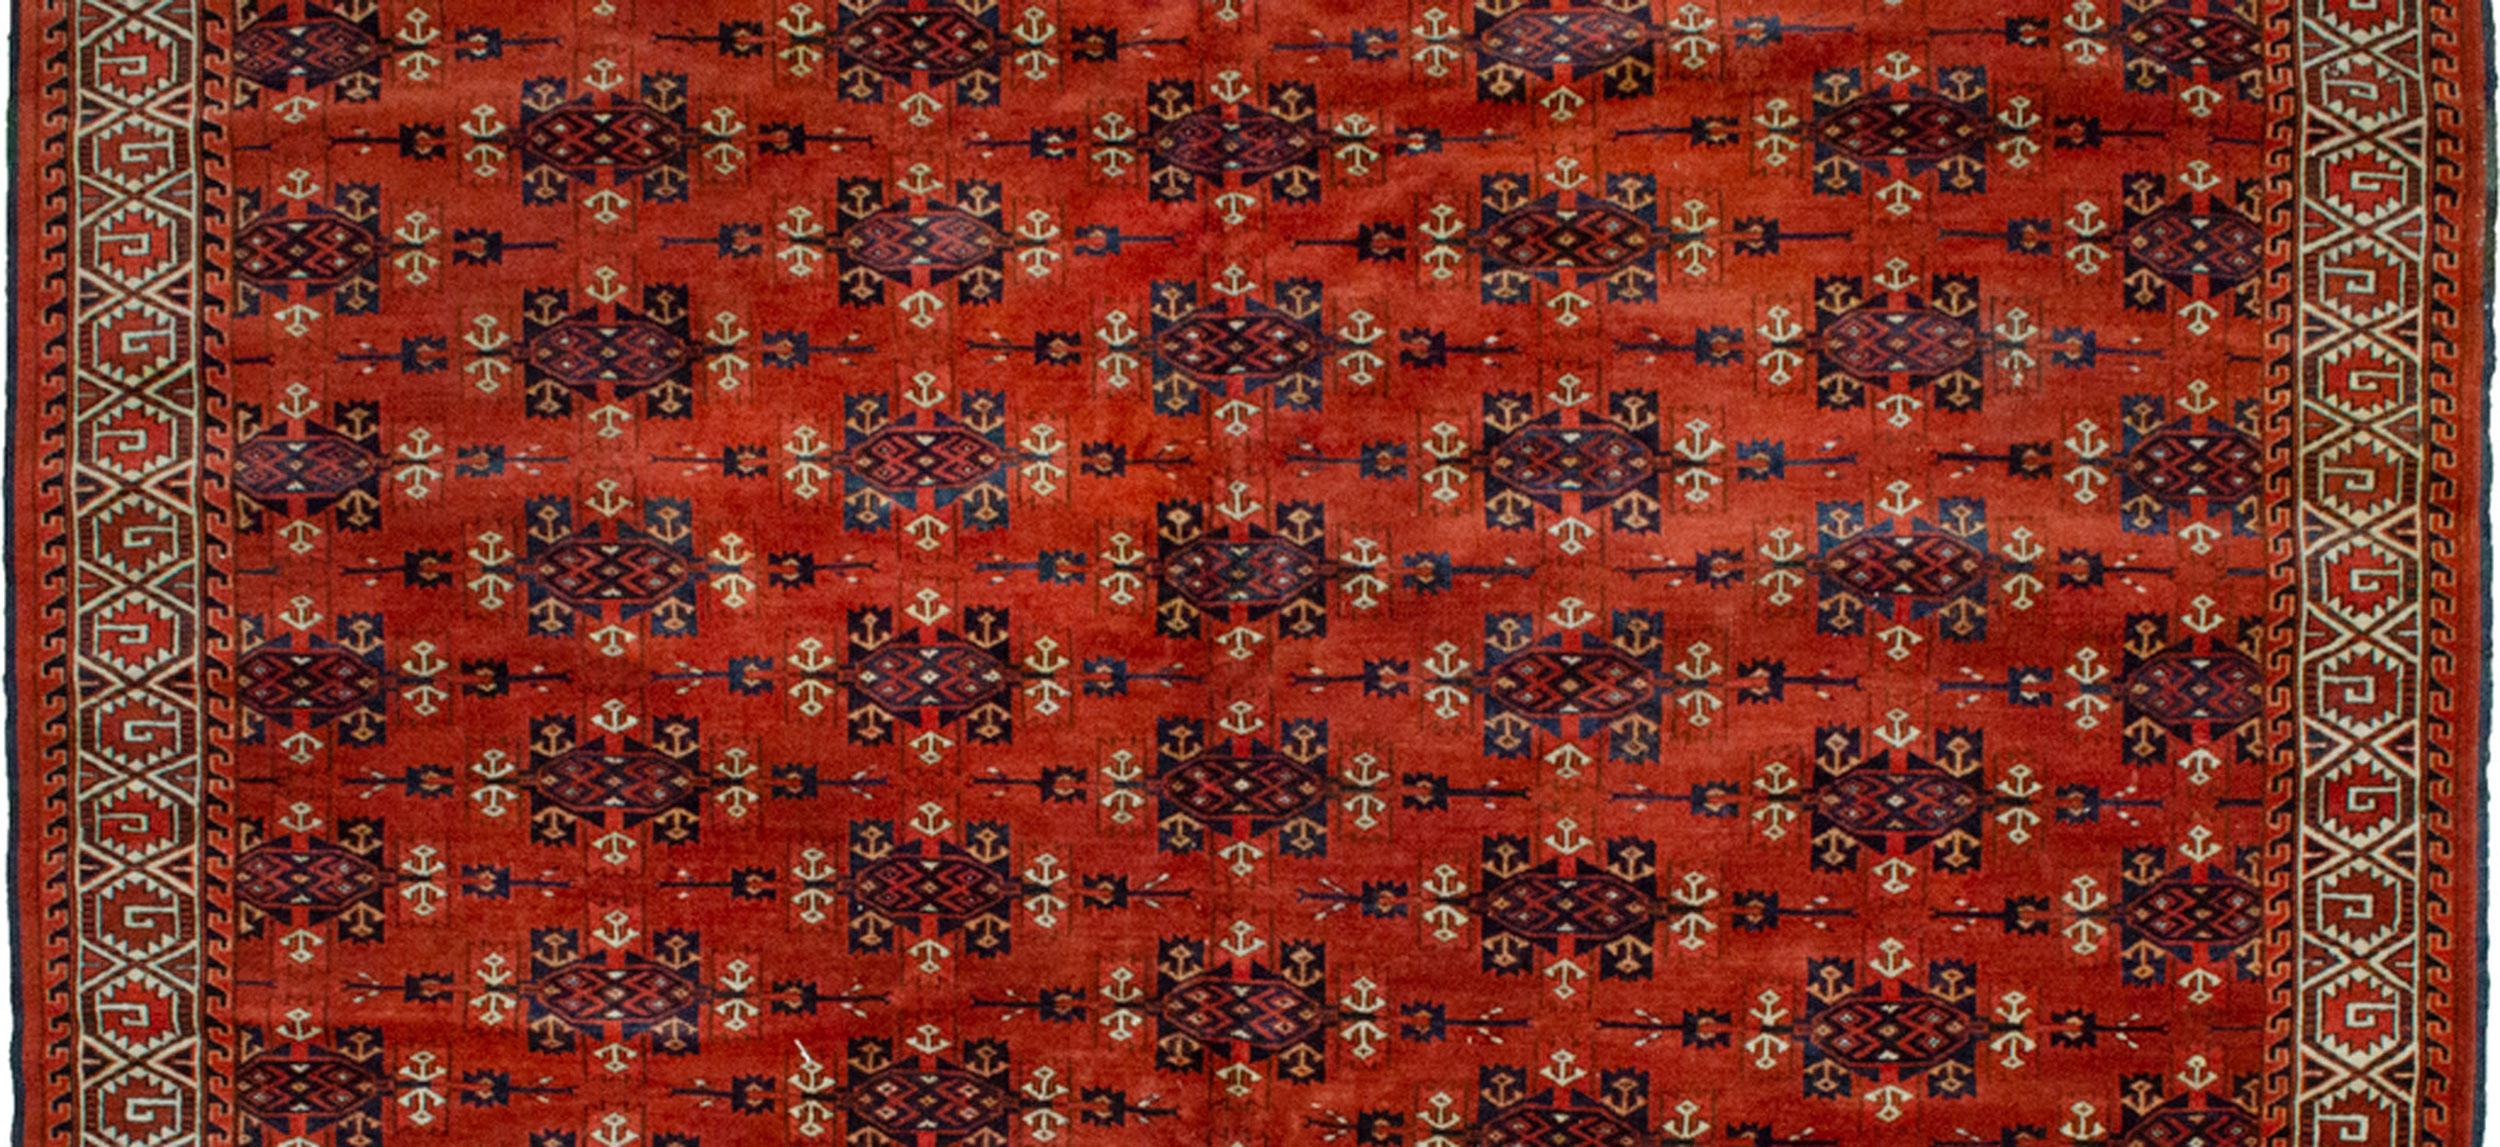 19th Century Antique Turkmen Yamoud Carpet, Turkmenistan, Circa 1900 For Sale